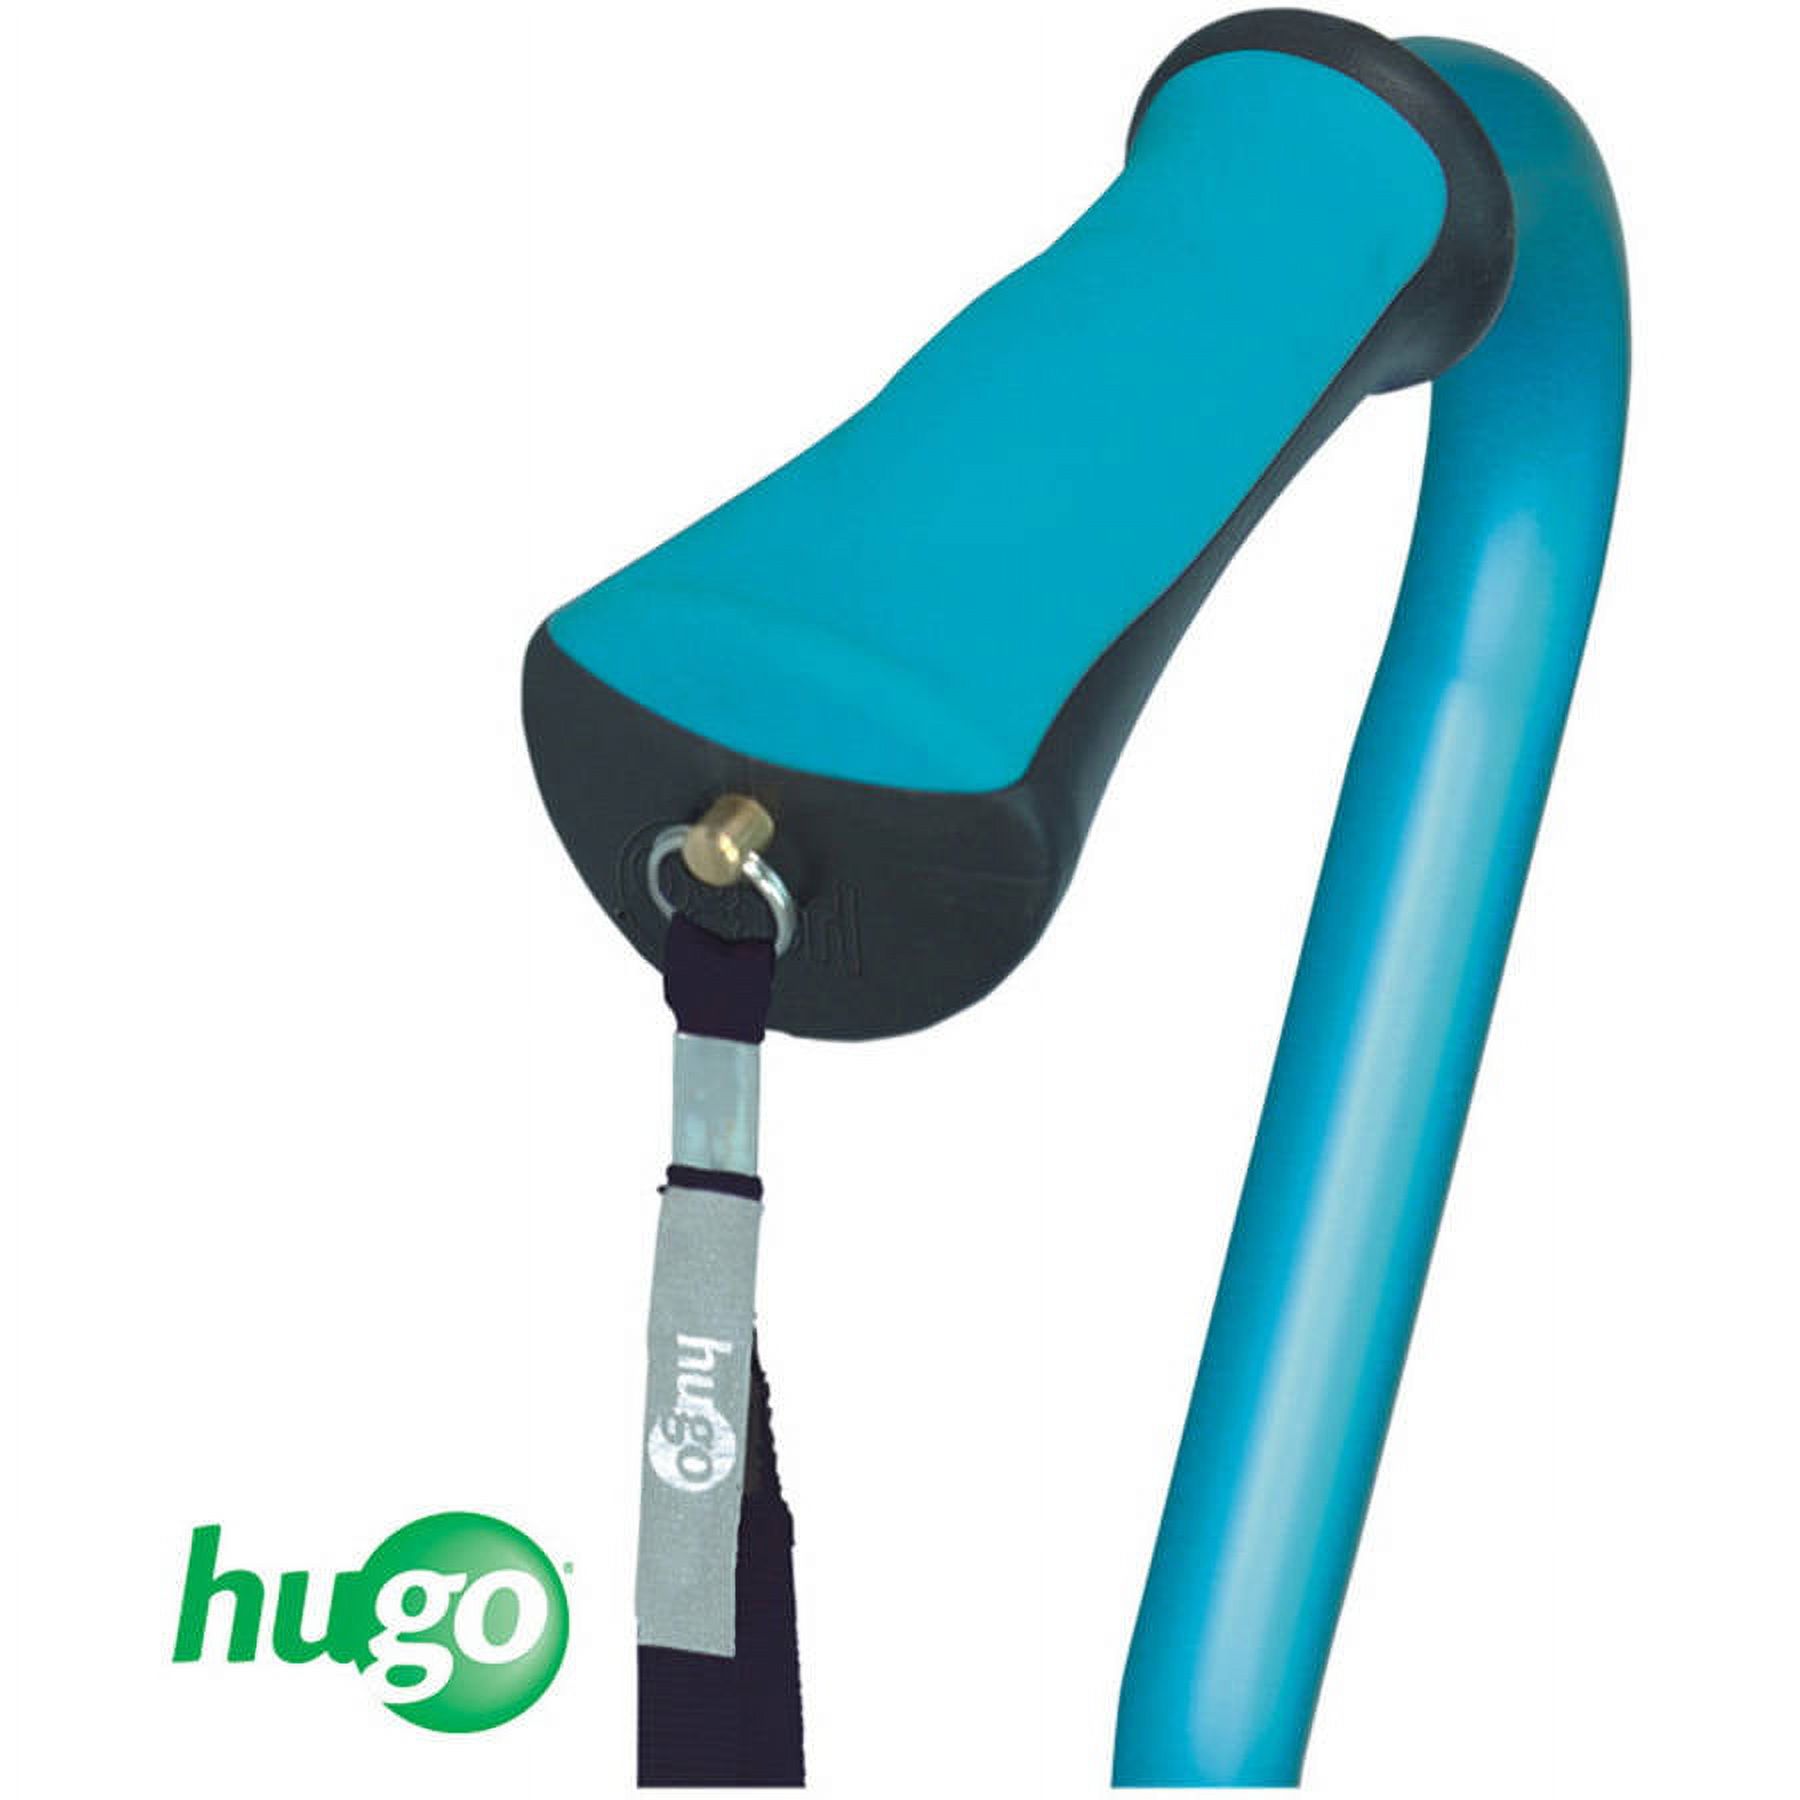 Hugo QuadPod Offset Cane with Ultra Stable Cane Tip, Aquamarine - image 3 of 5